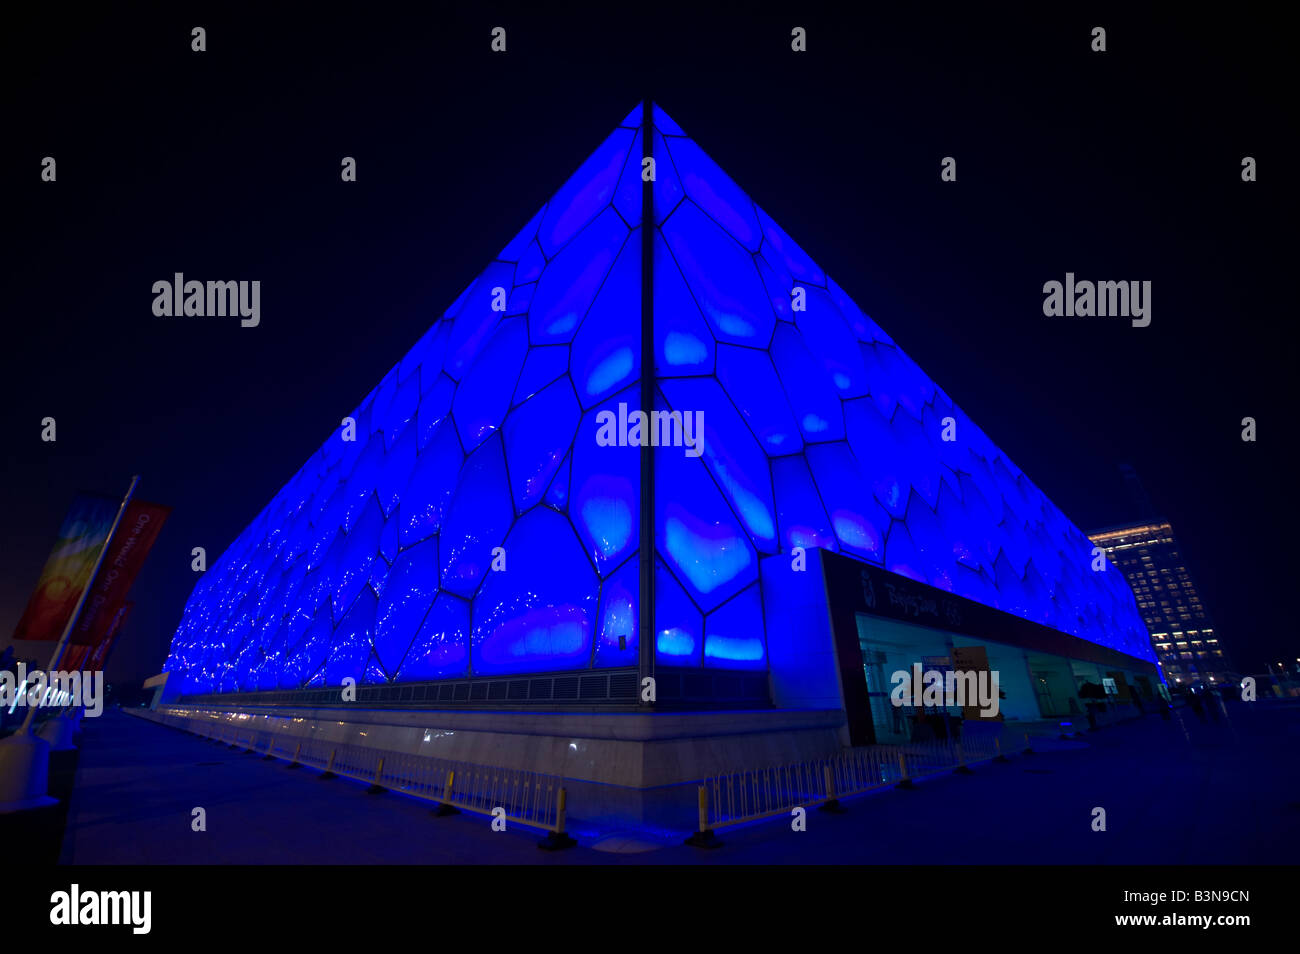 Centre national de natation de Pékin, également appelé Cube d'eau, pendant les Jeux Olympiques de Beijing 2008, bleu, éclairé la nuit Banque D'Images